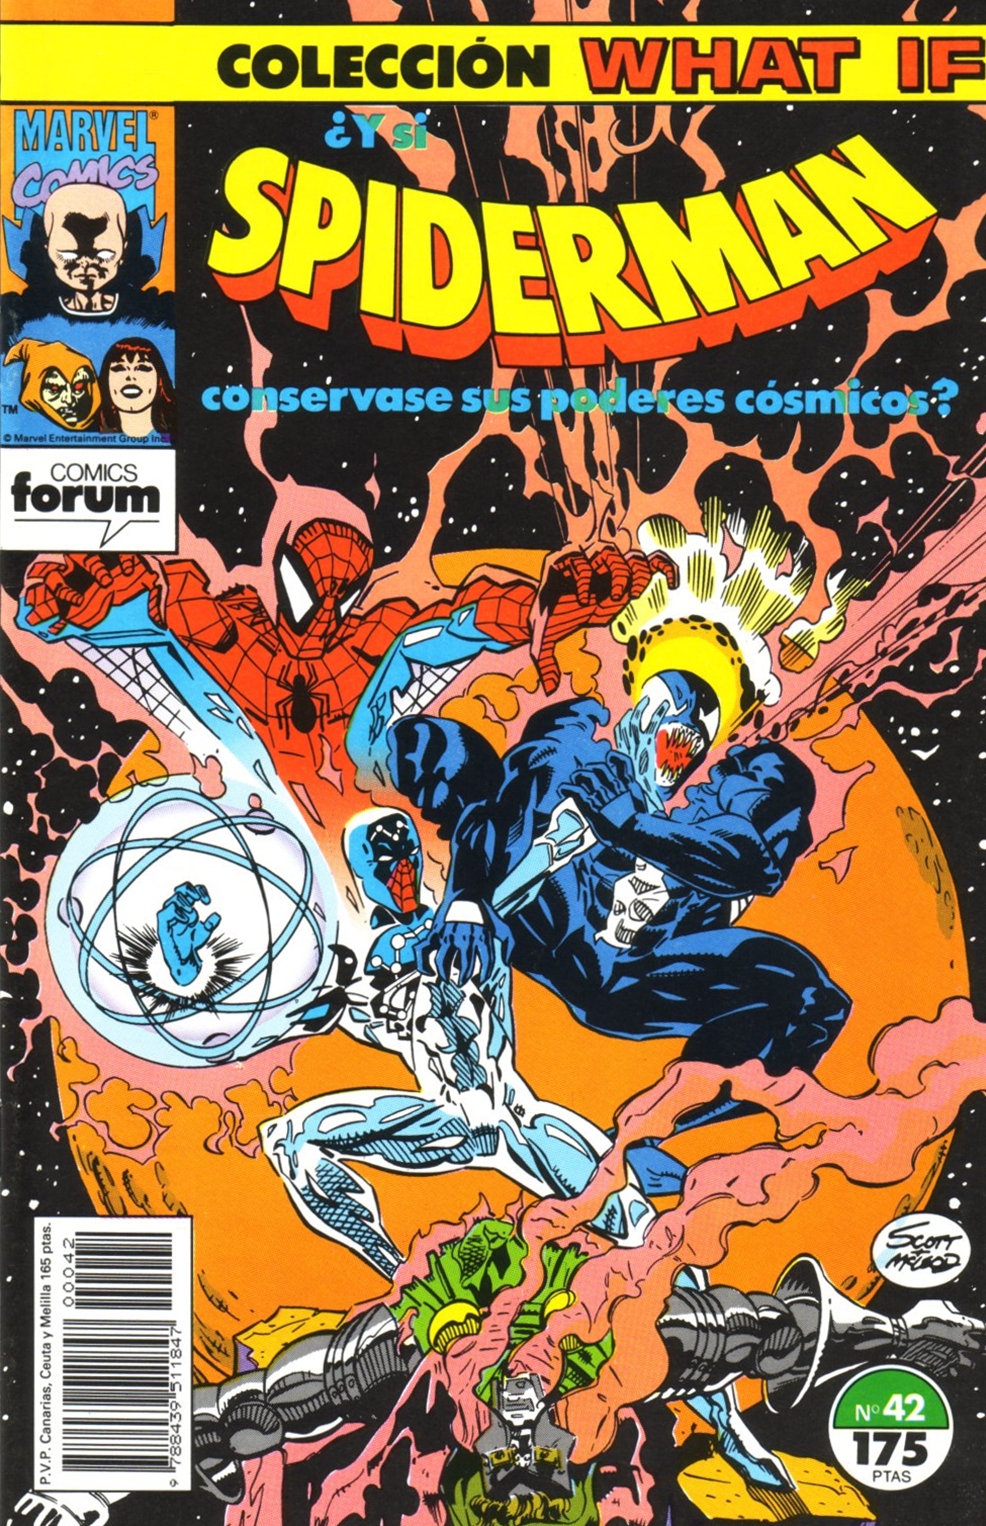 Comicrítico: WHAT IF? ¿Y si SPIDERMAN conservase sus poderes cósmicos?